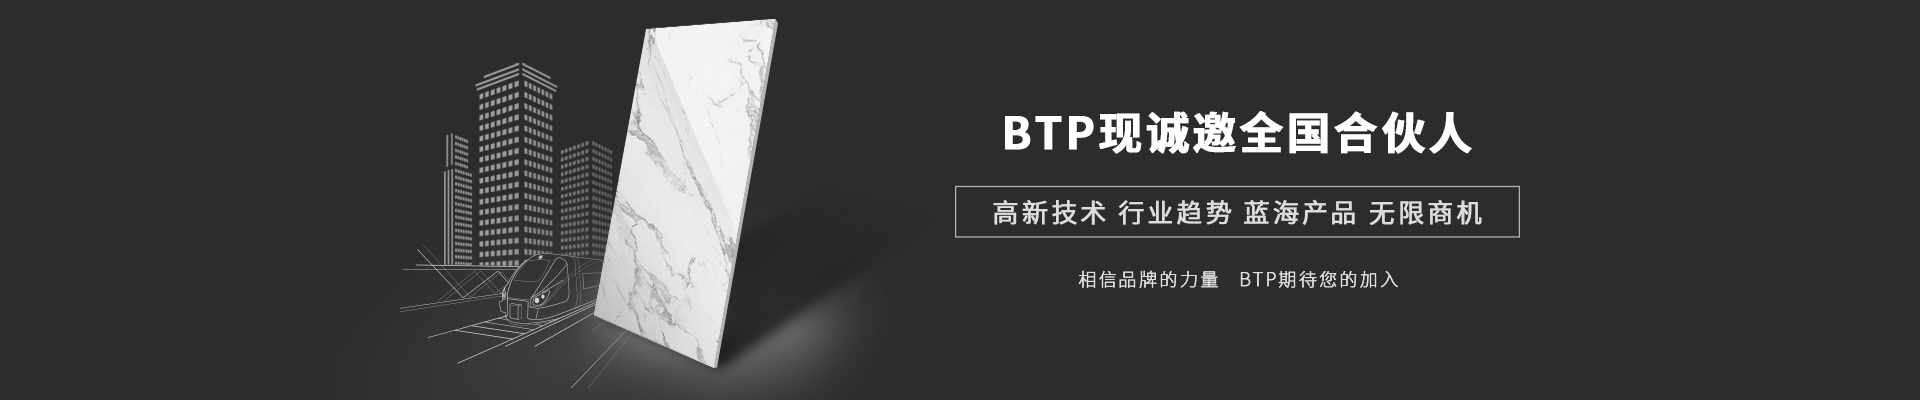 BTP-现诚邀全国合伙人